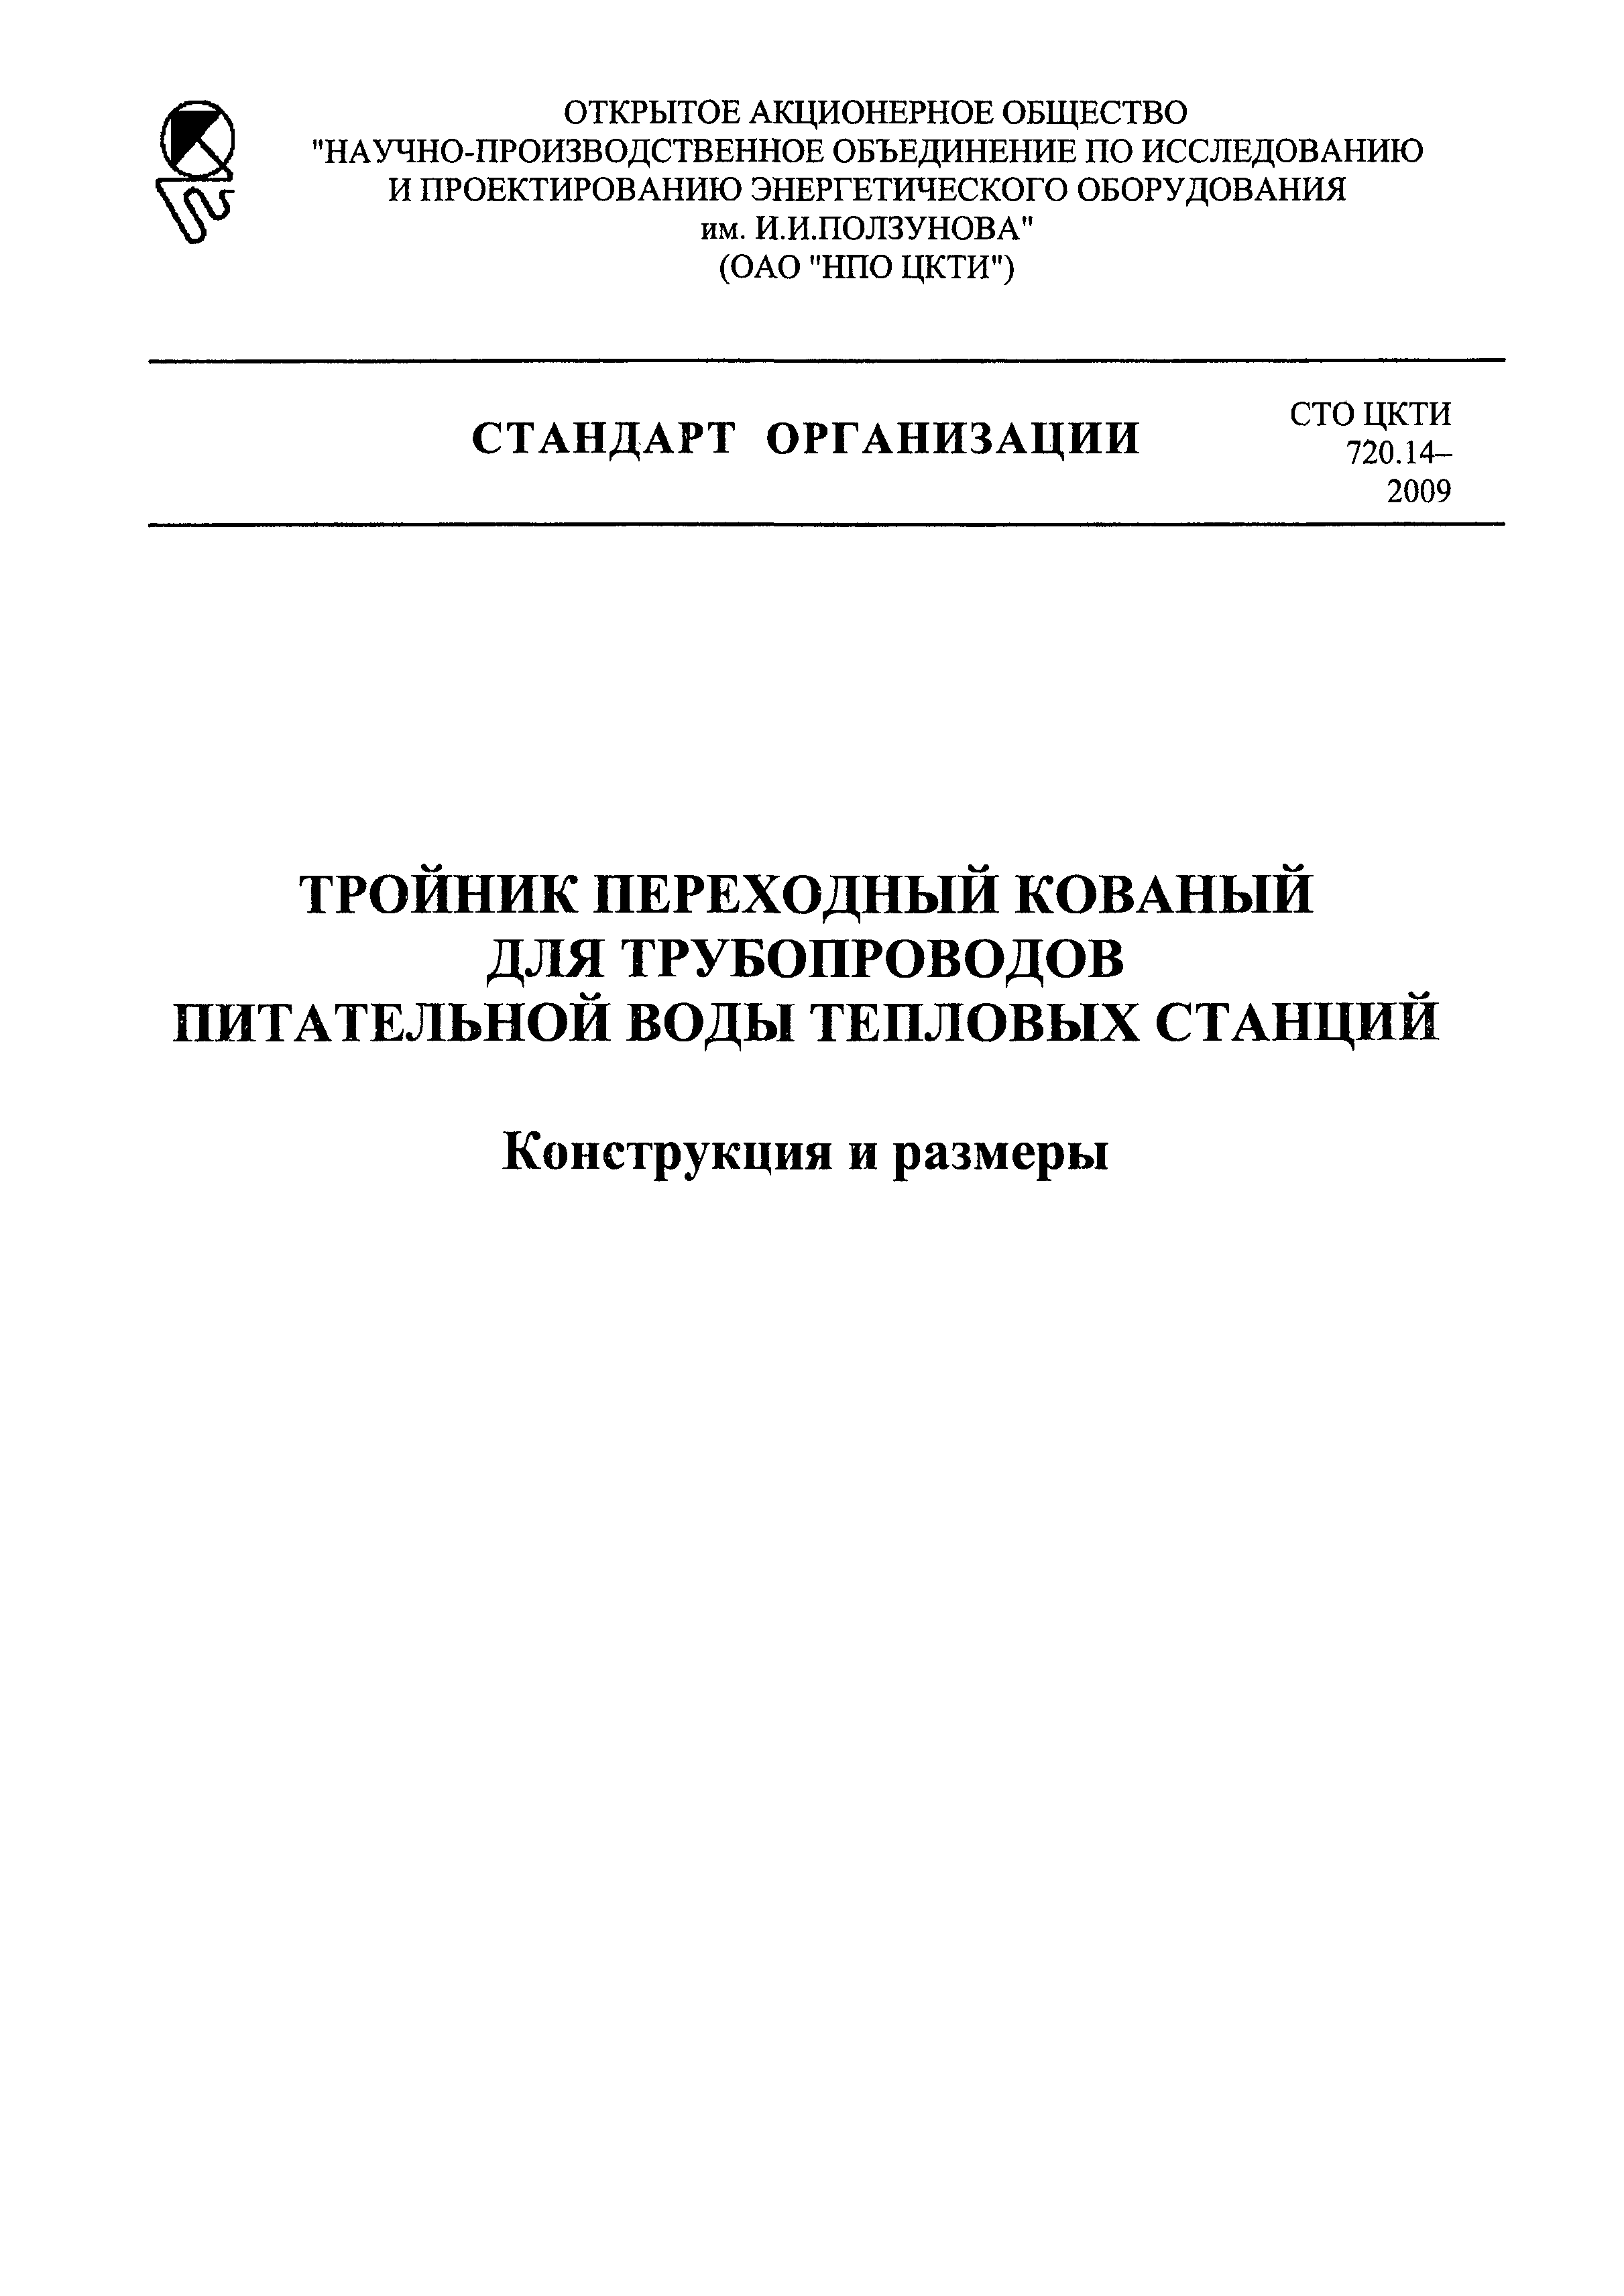 СТО ЦКТИ 720.14-2009